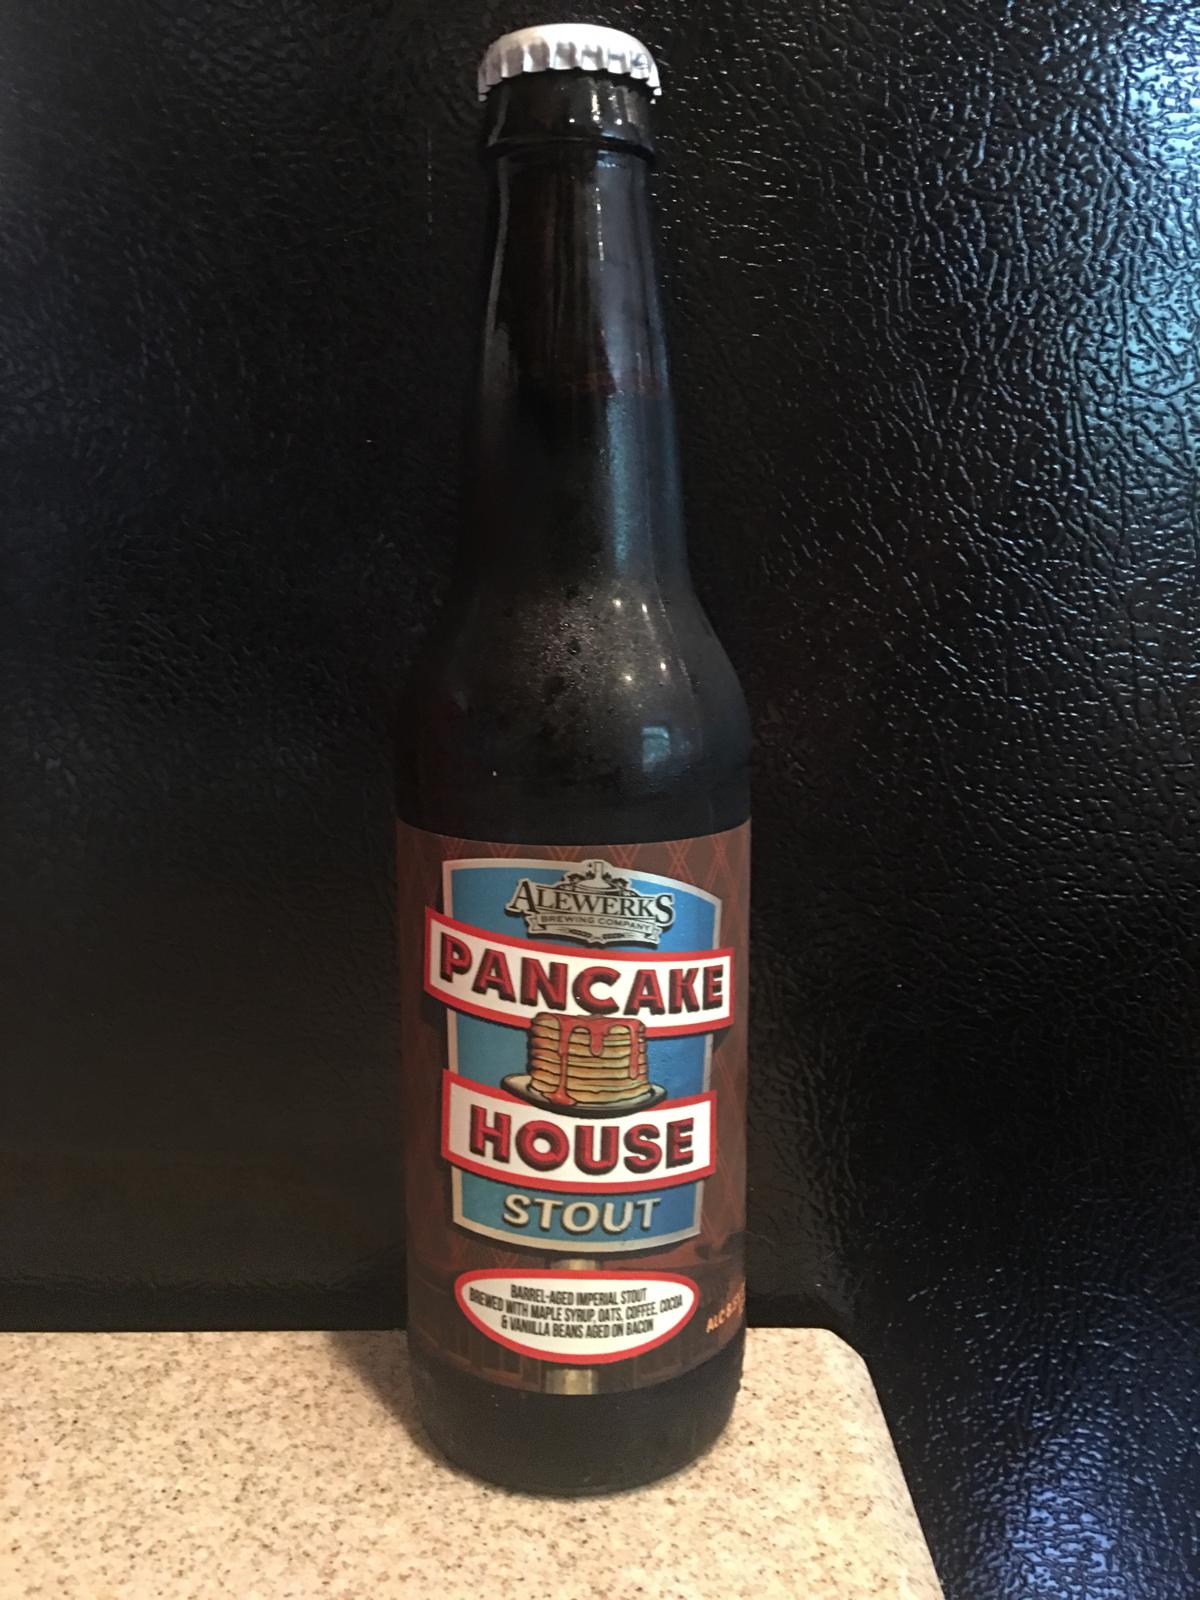 Pancake House Stout